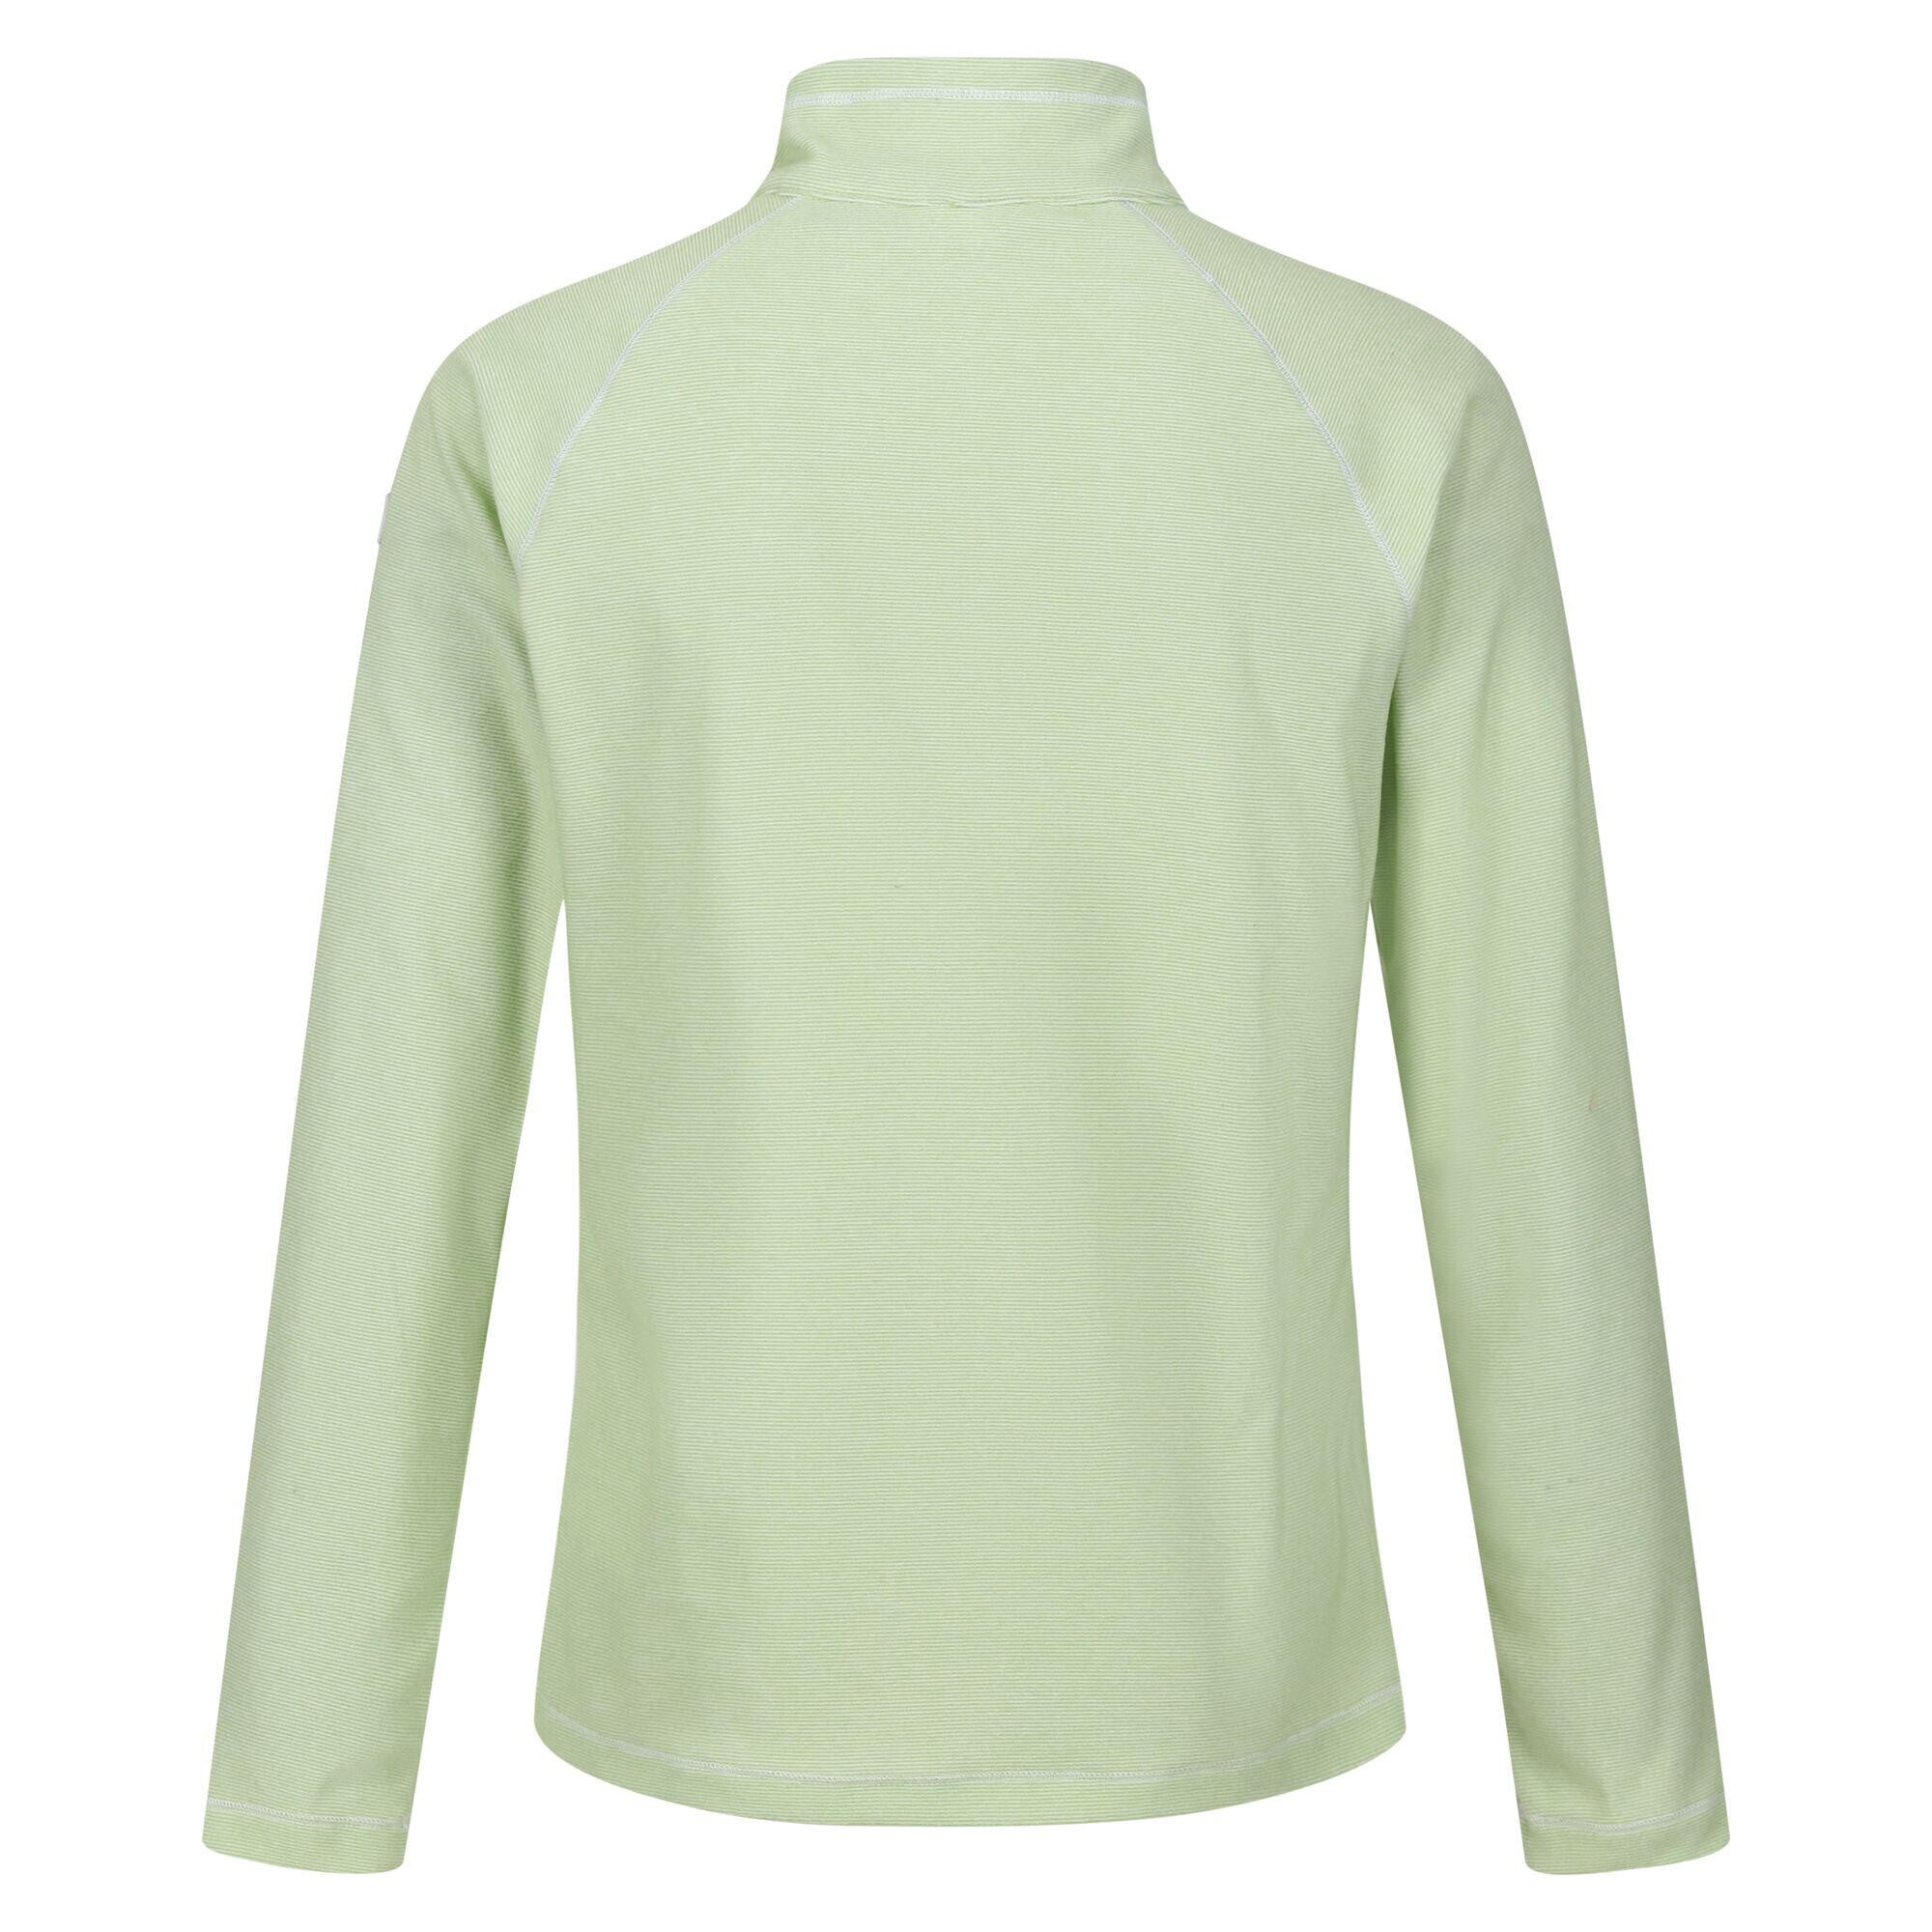 Great Outdoors Womens/Ladies Montes Half Zip Fleece Top (Quiet Green) 2/4